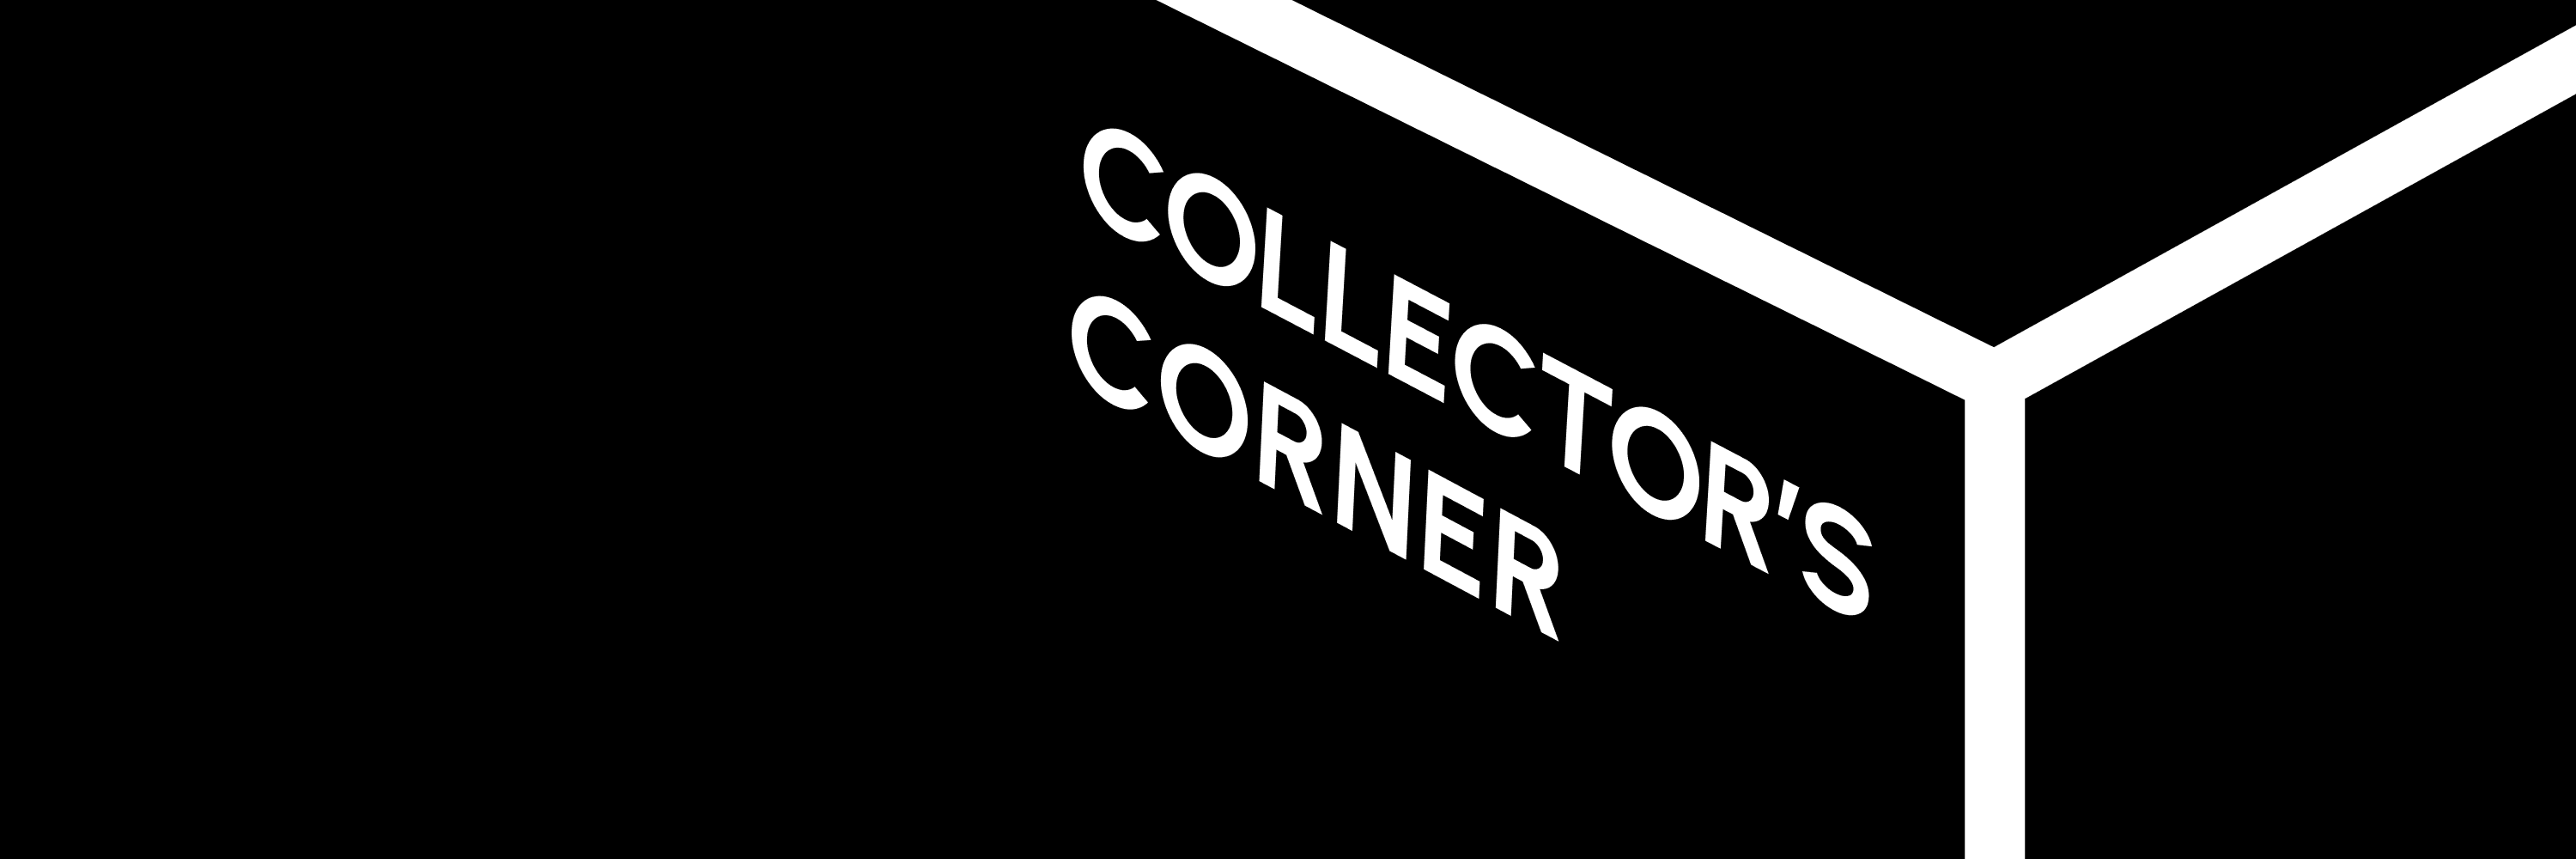 Collectors_Corner 橫幅